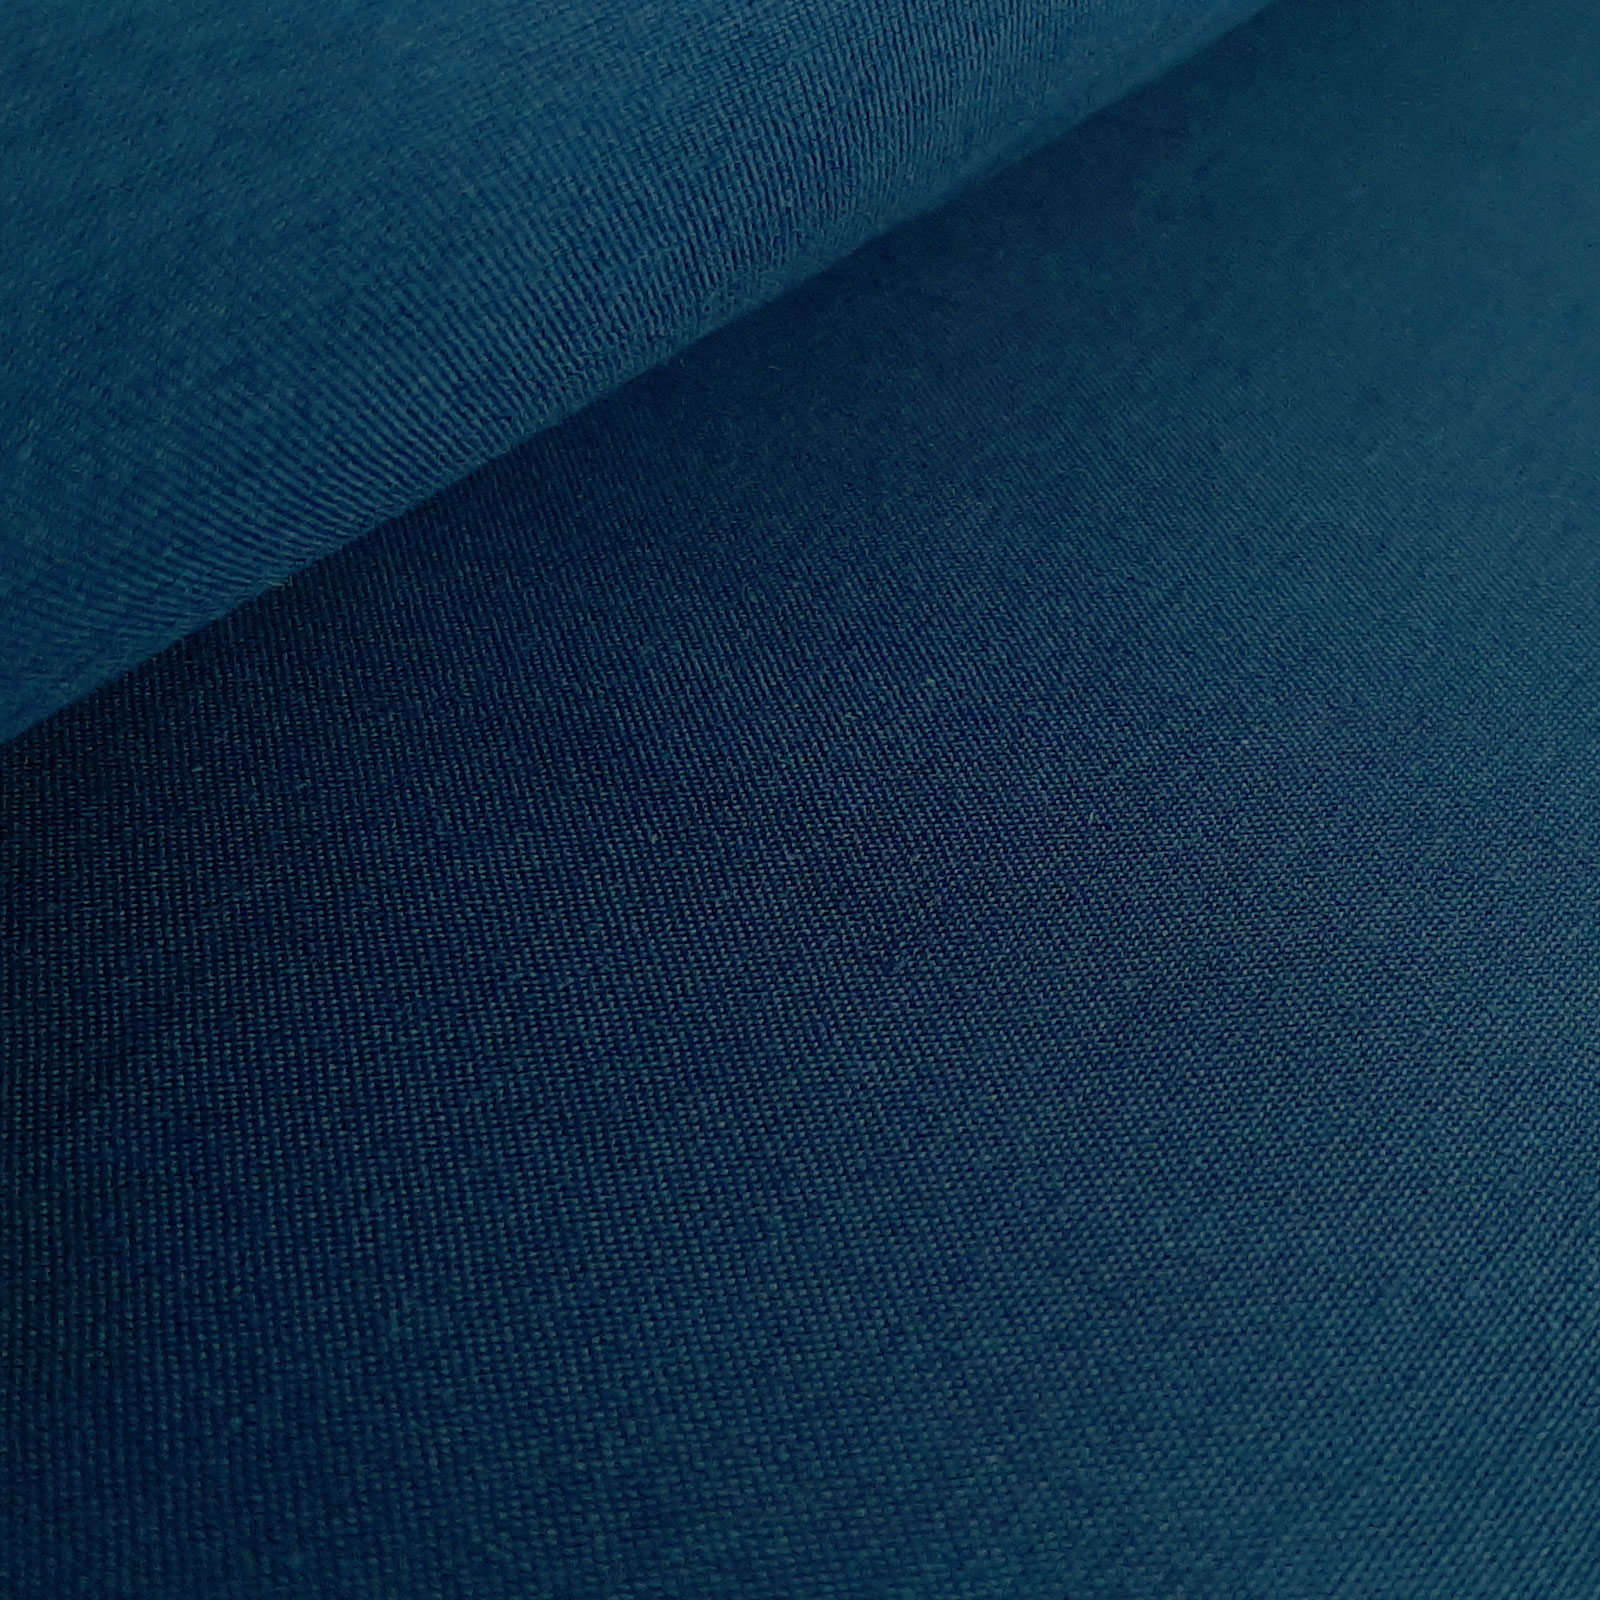 Hedwig - Öko Tex® algodão choupo - Azul Escuro